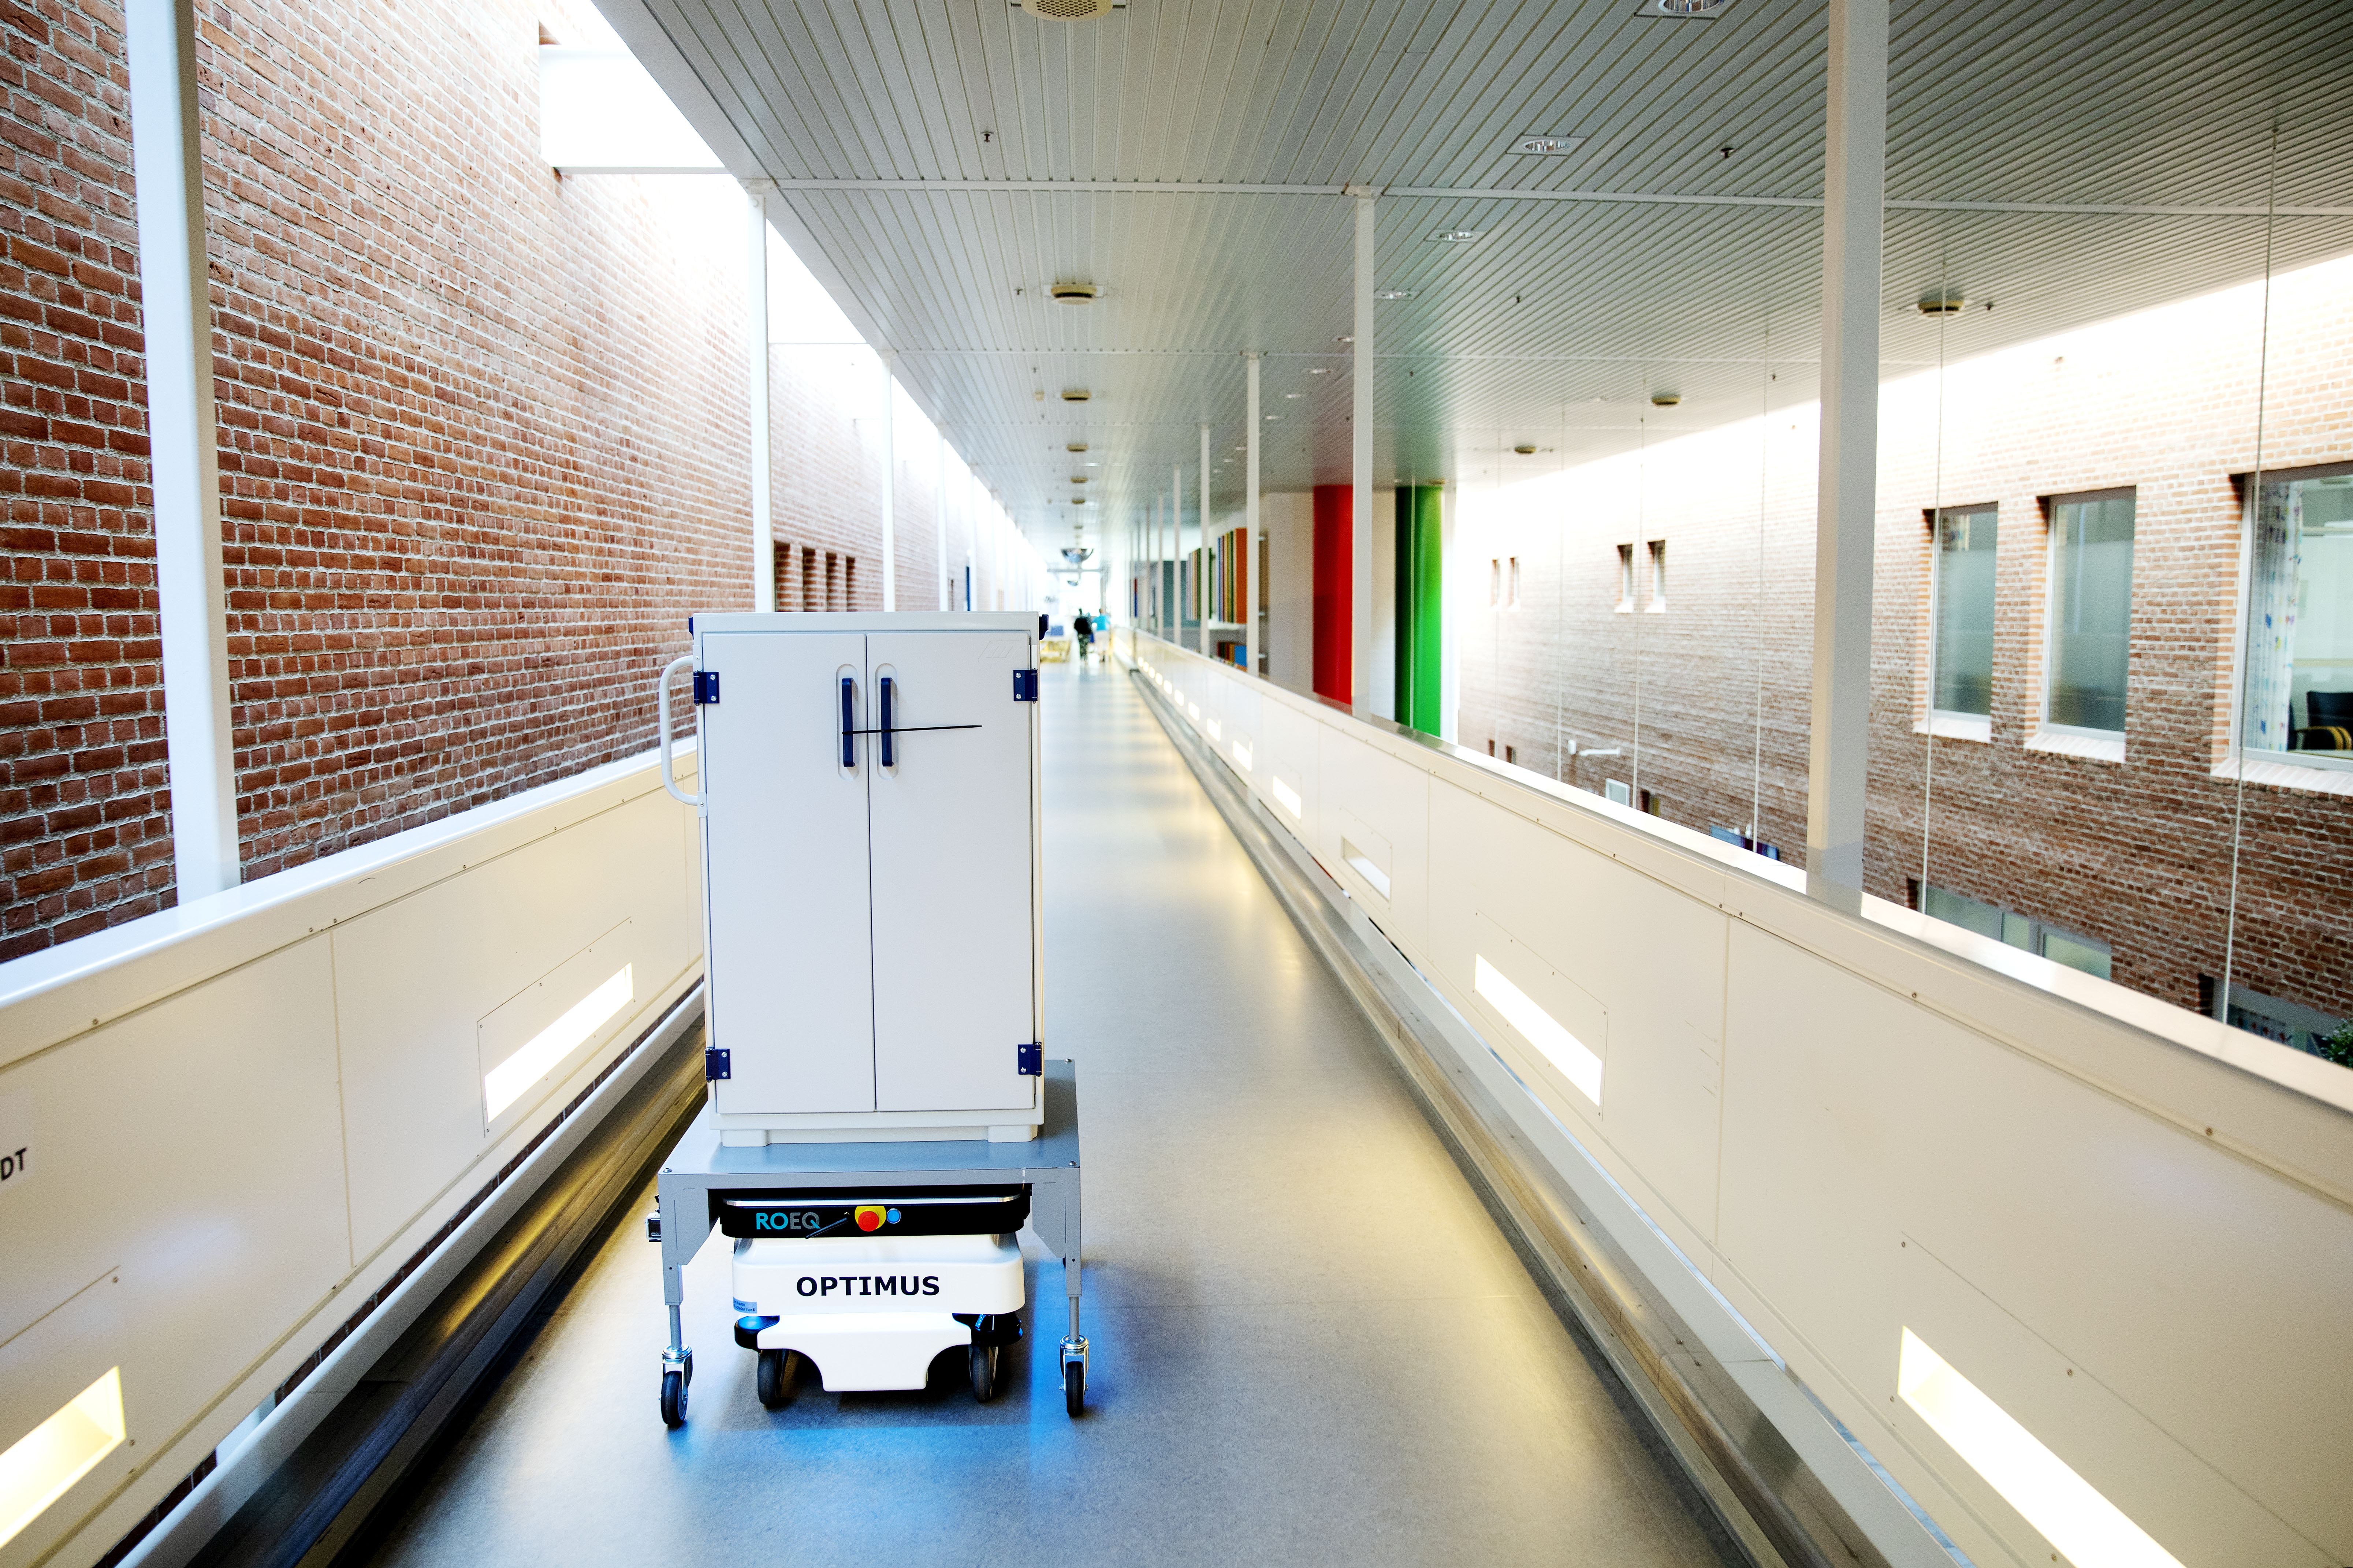 Mobile robotter på sygehuse besparelser højere kvalitet | Communications